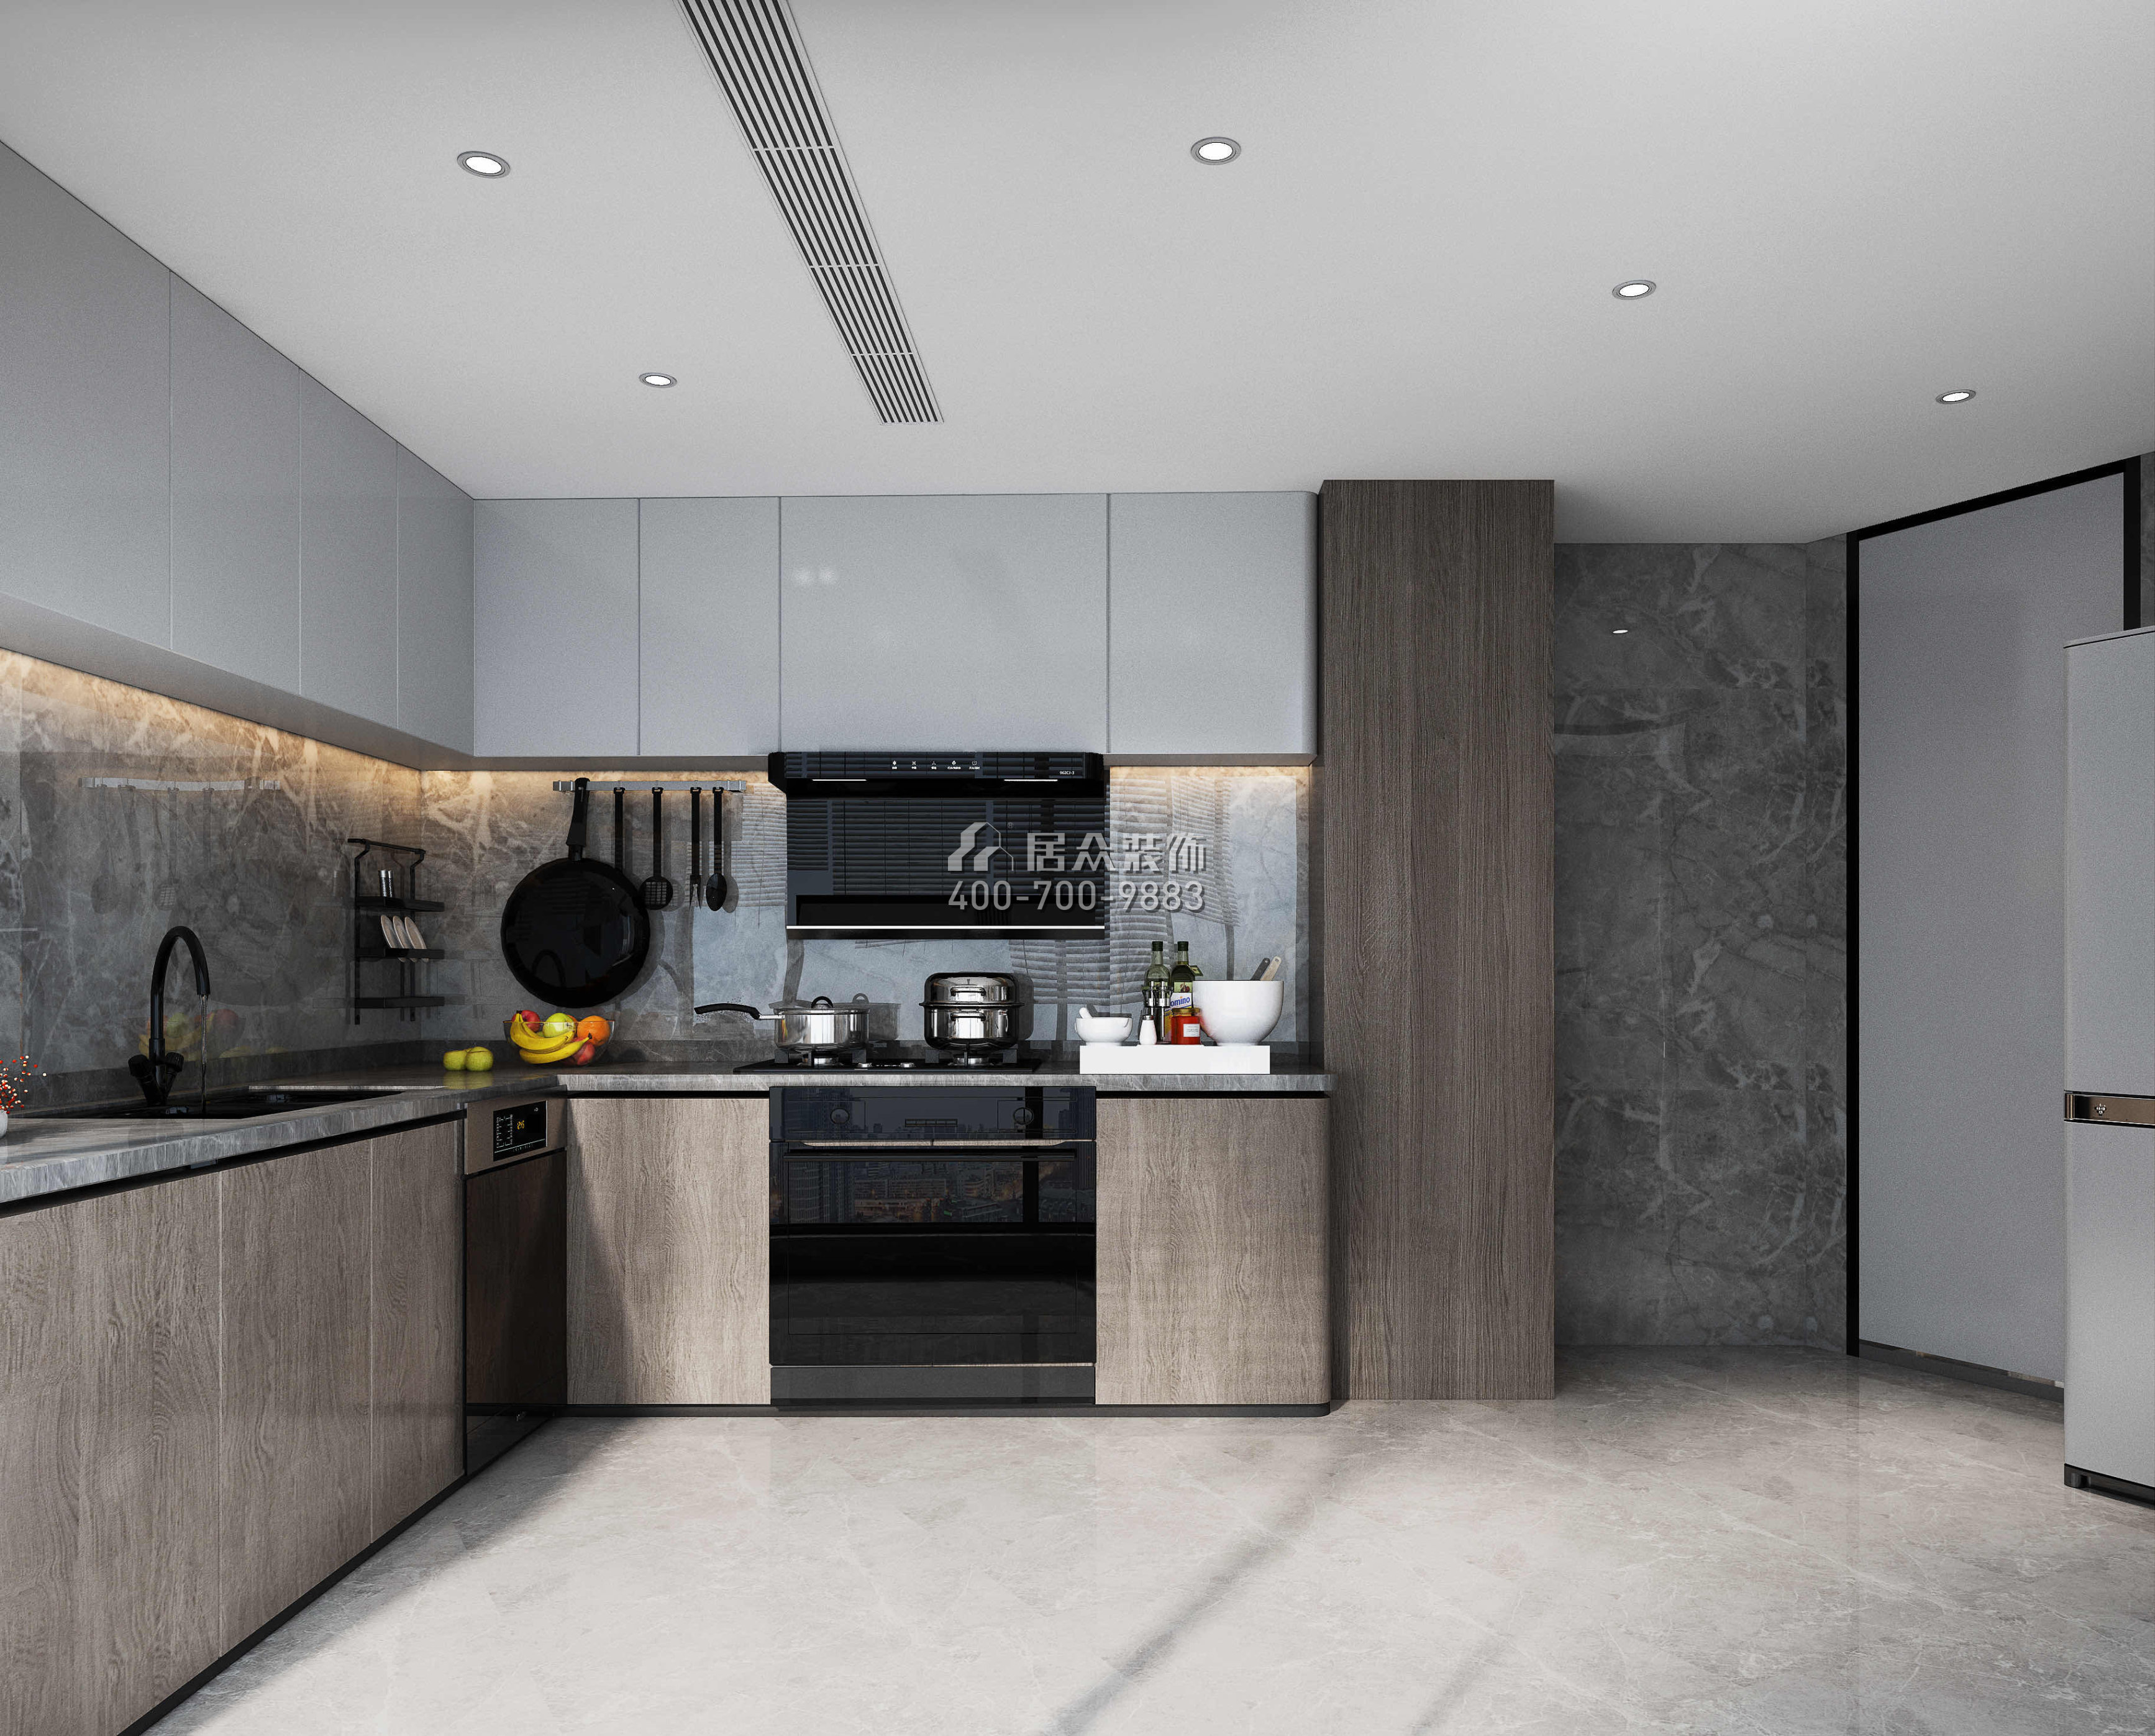 金泓凱旋城185平方米現代簡約風格平層戶型廚房裝修效果圖